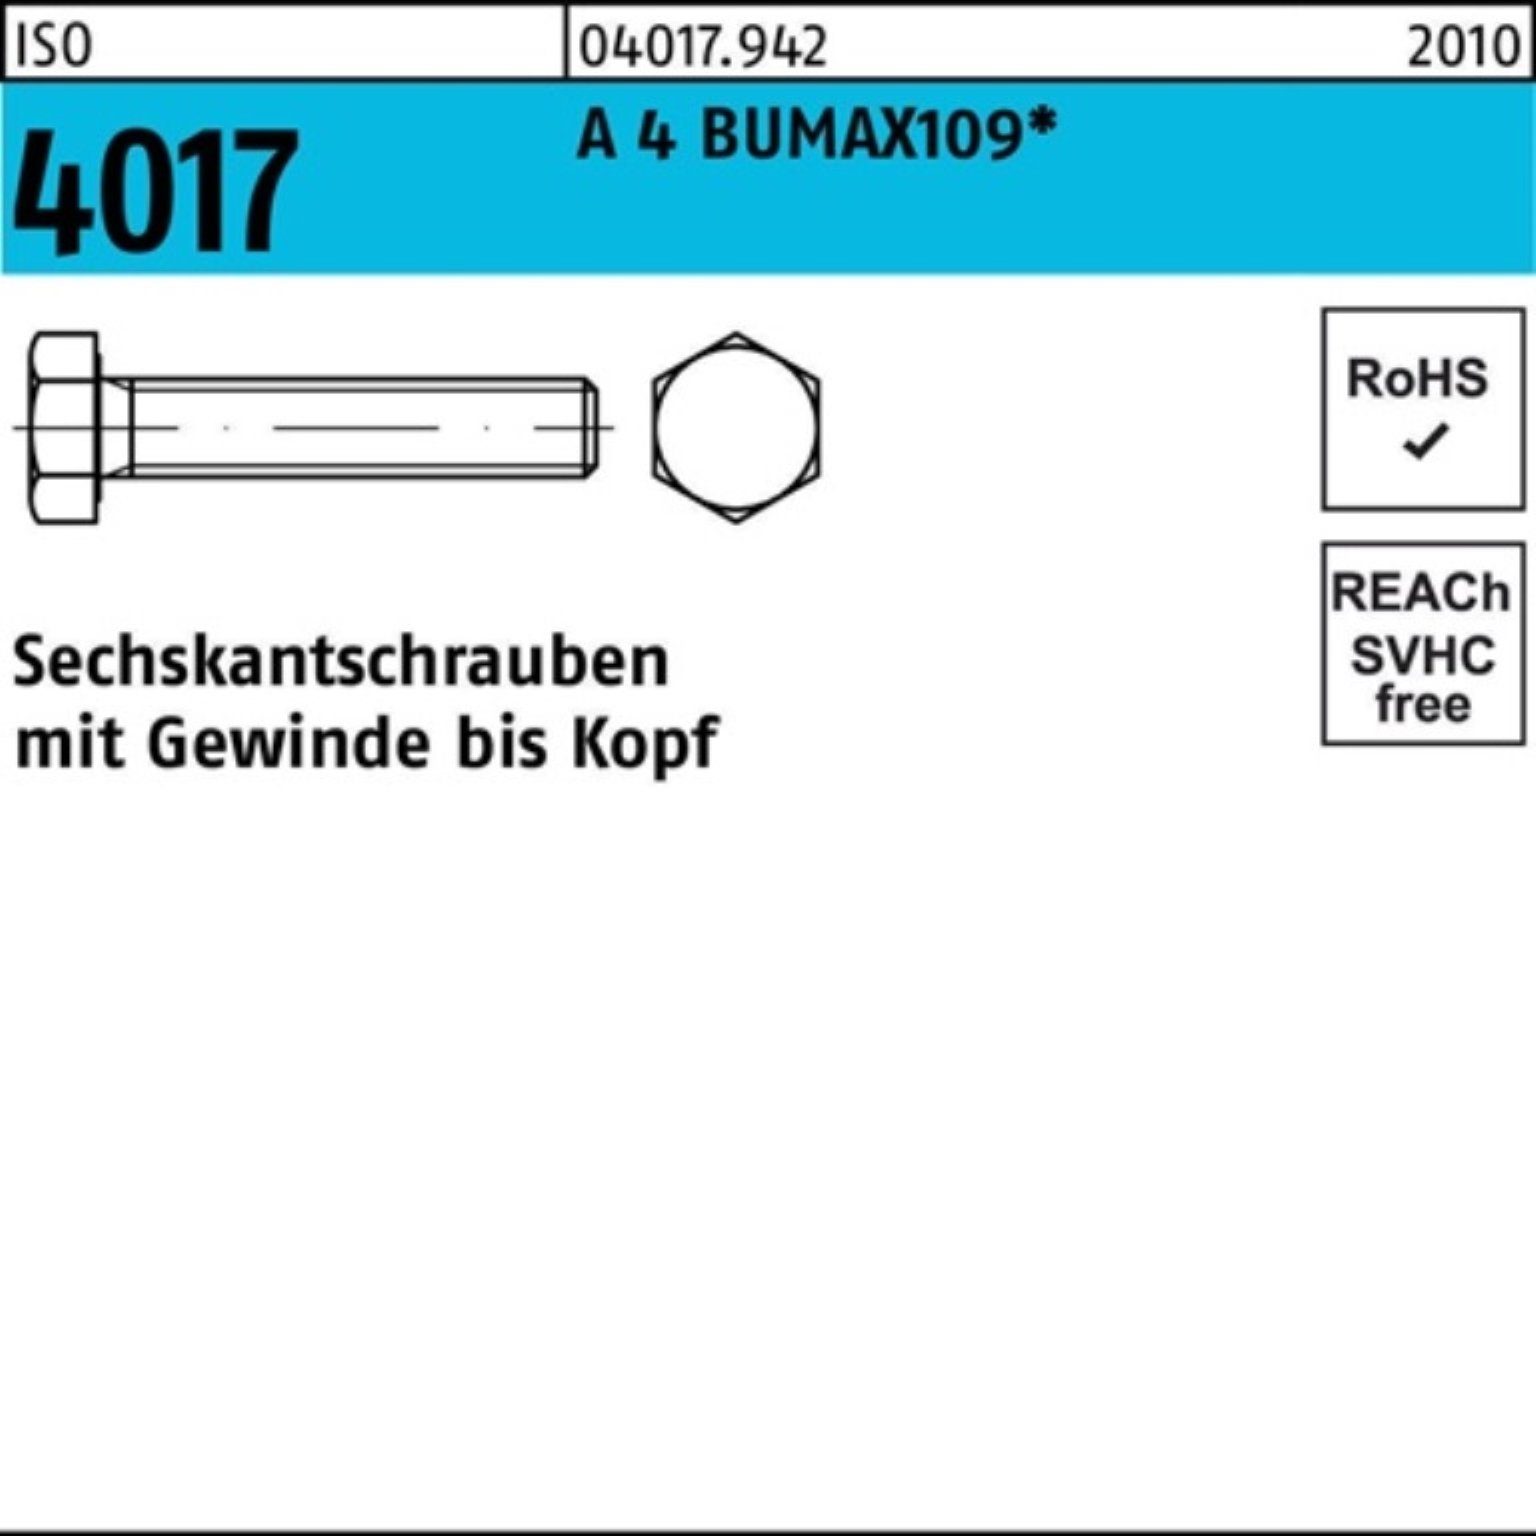 4 M16x BUMAX109 Sechskantschraube 4017 Sechskantschraube Bufab Stüc ISO Pack 25 40 VG A 100er